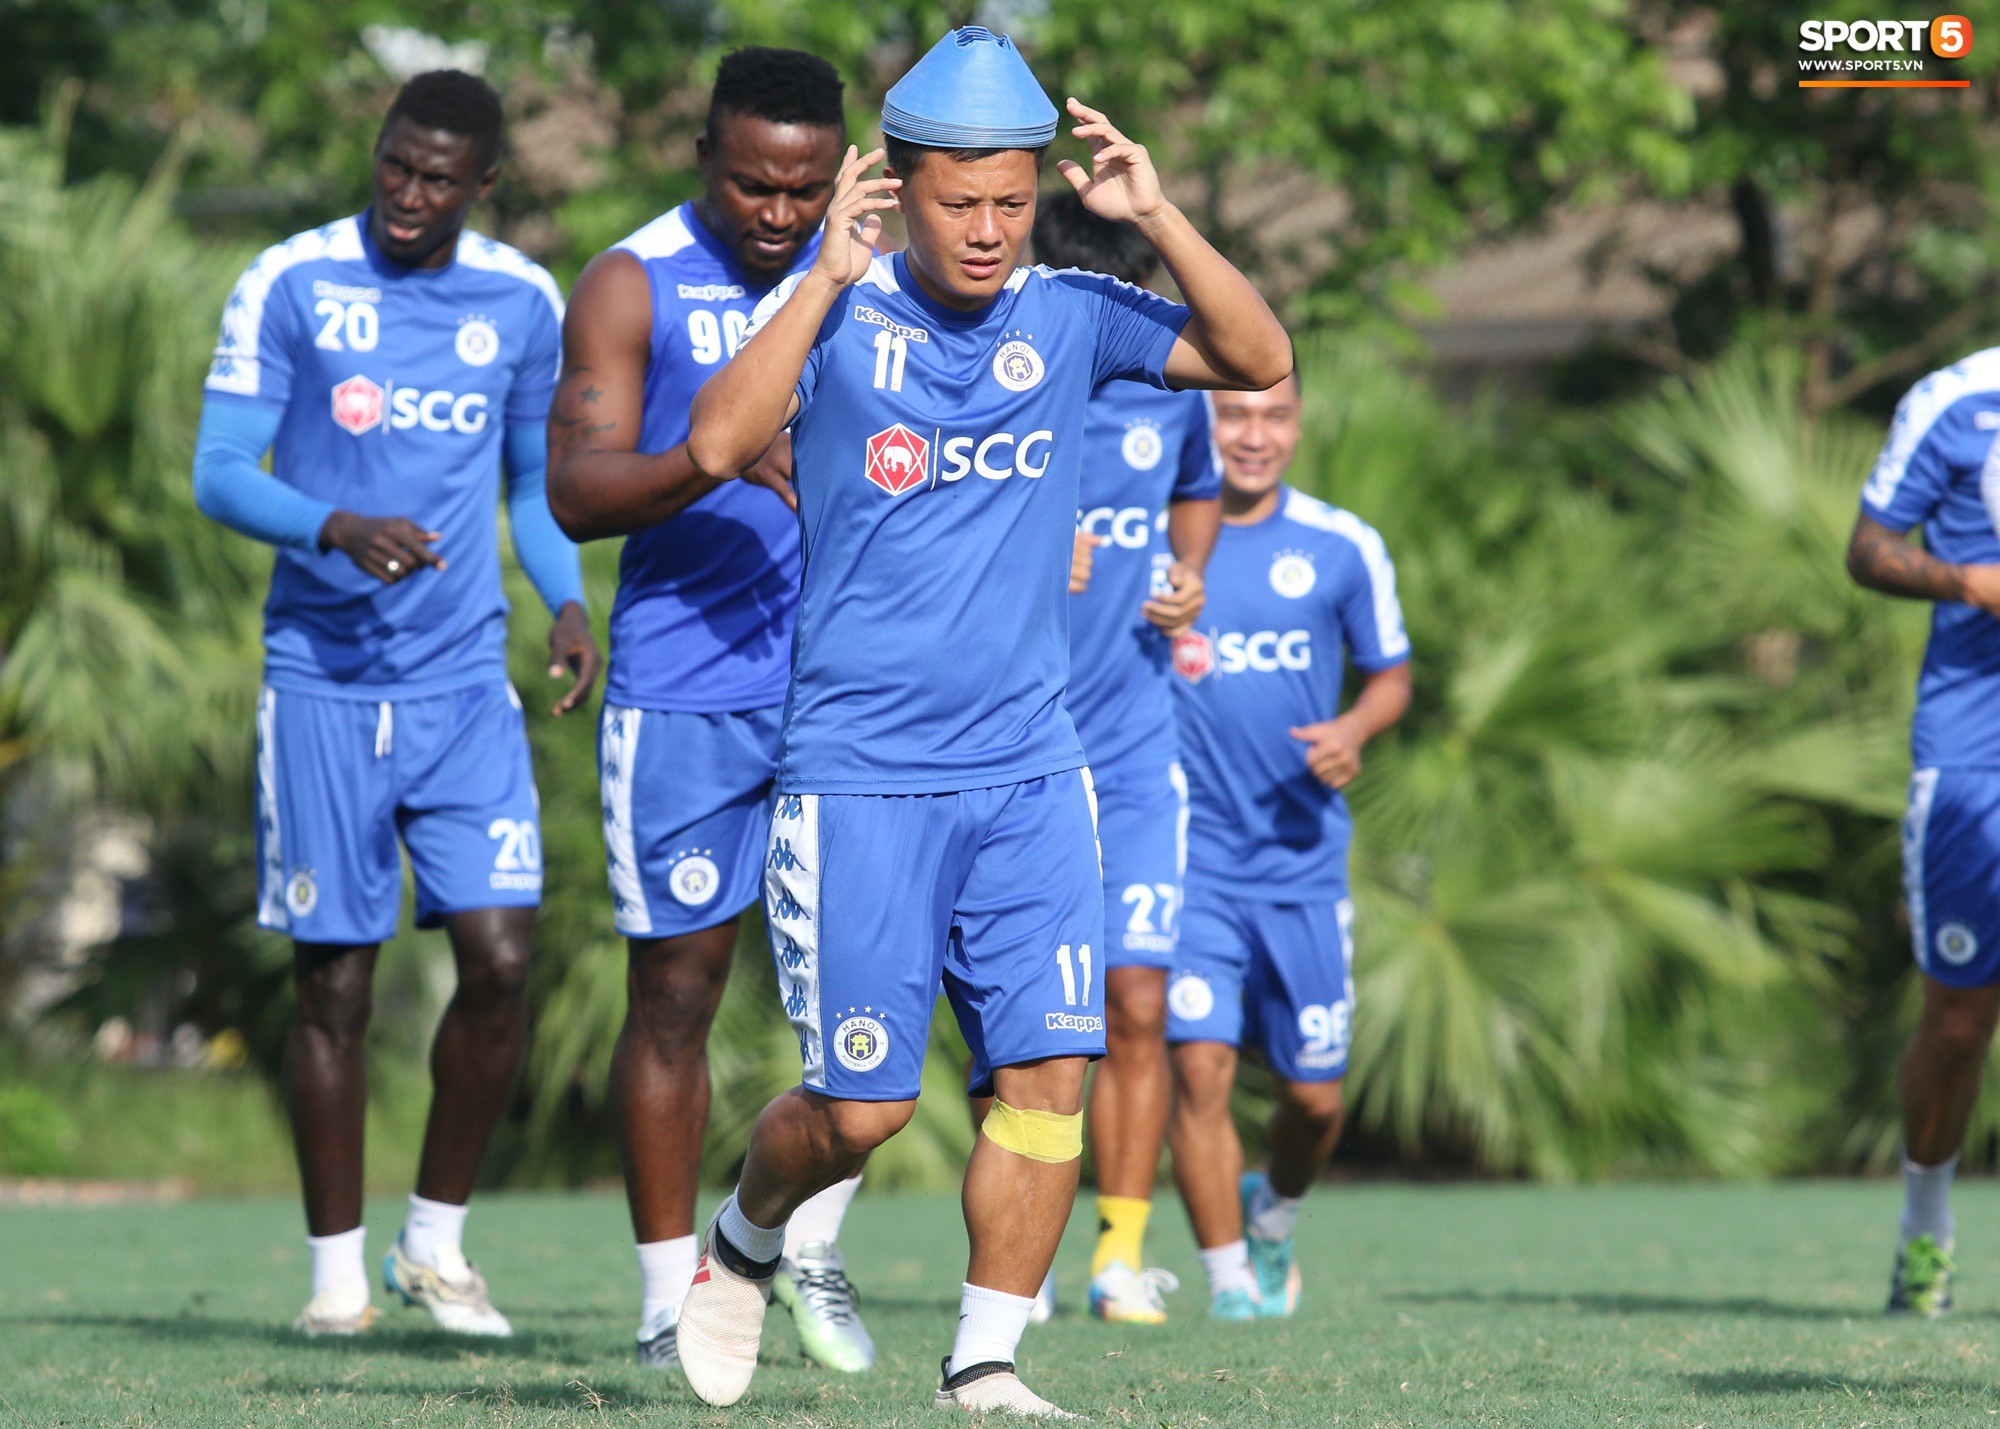 Muôn kiểu chống nóng của cầu thủ Hà Nội FC khi tập luyện dưới trời nắng như đổ lửa - Ảnh 2.